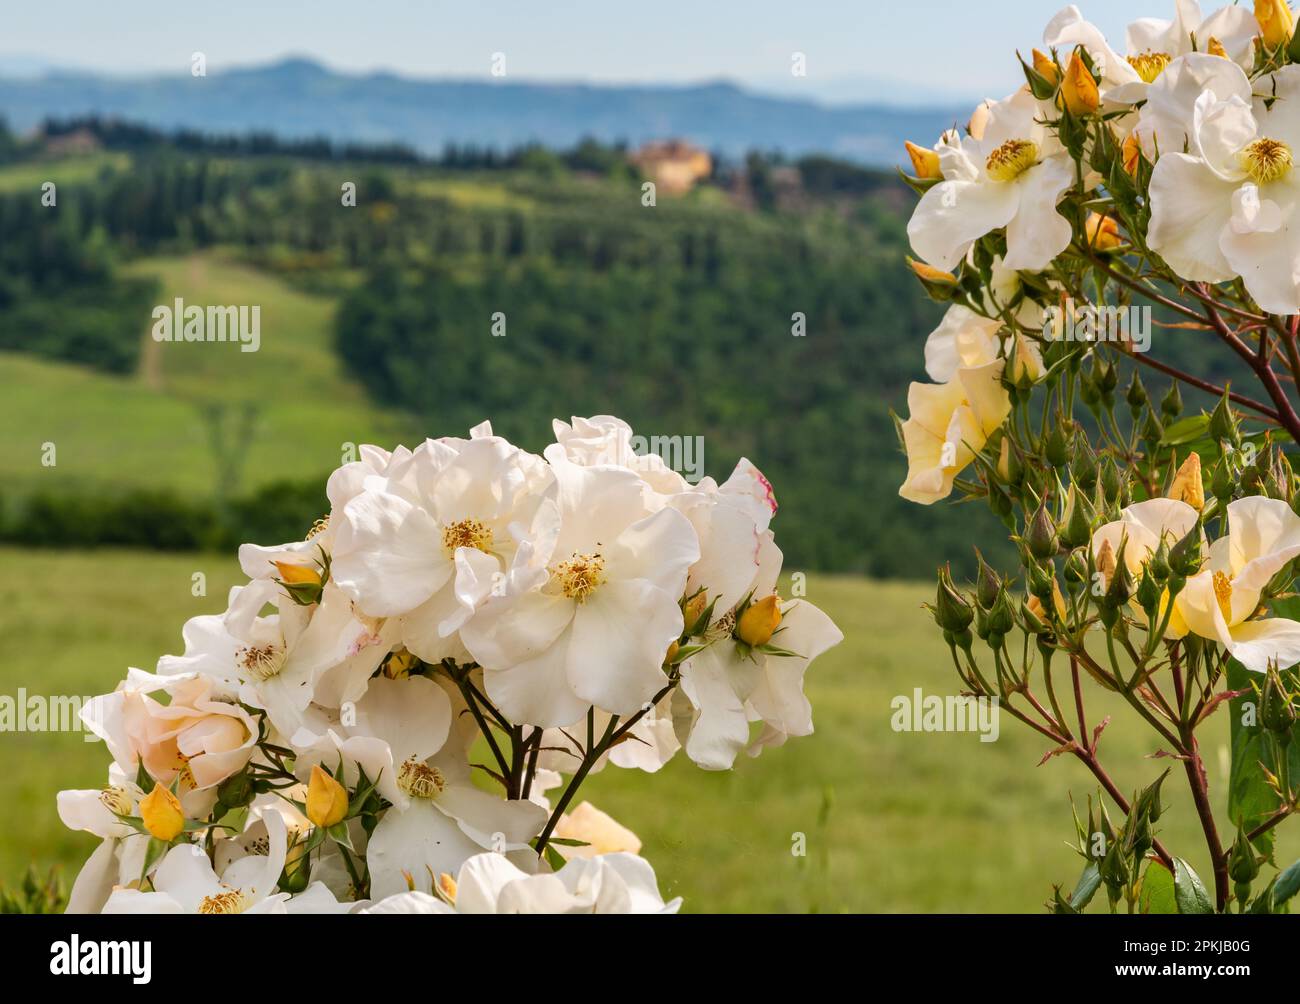 Rosa selvaggia, Rosa canina in fiore in primavera con le colline toscane sullo sfondo - Gambassi Terme, Toscana, Italia centrale - chiuso Foto Stock